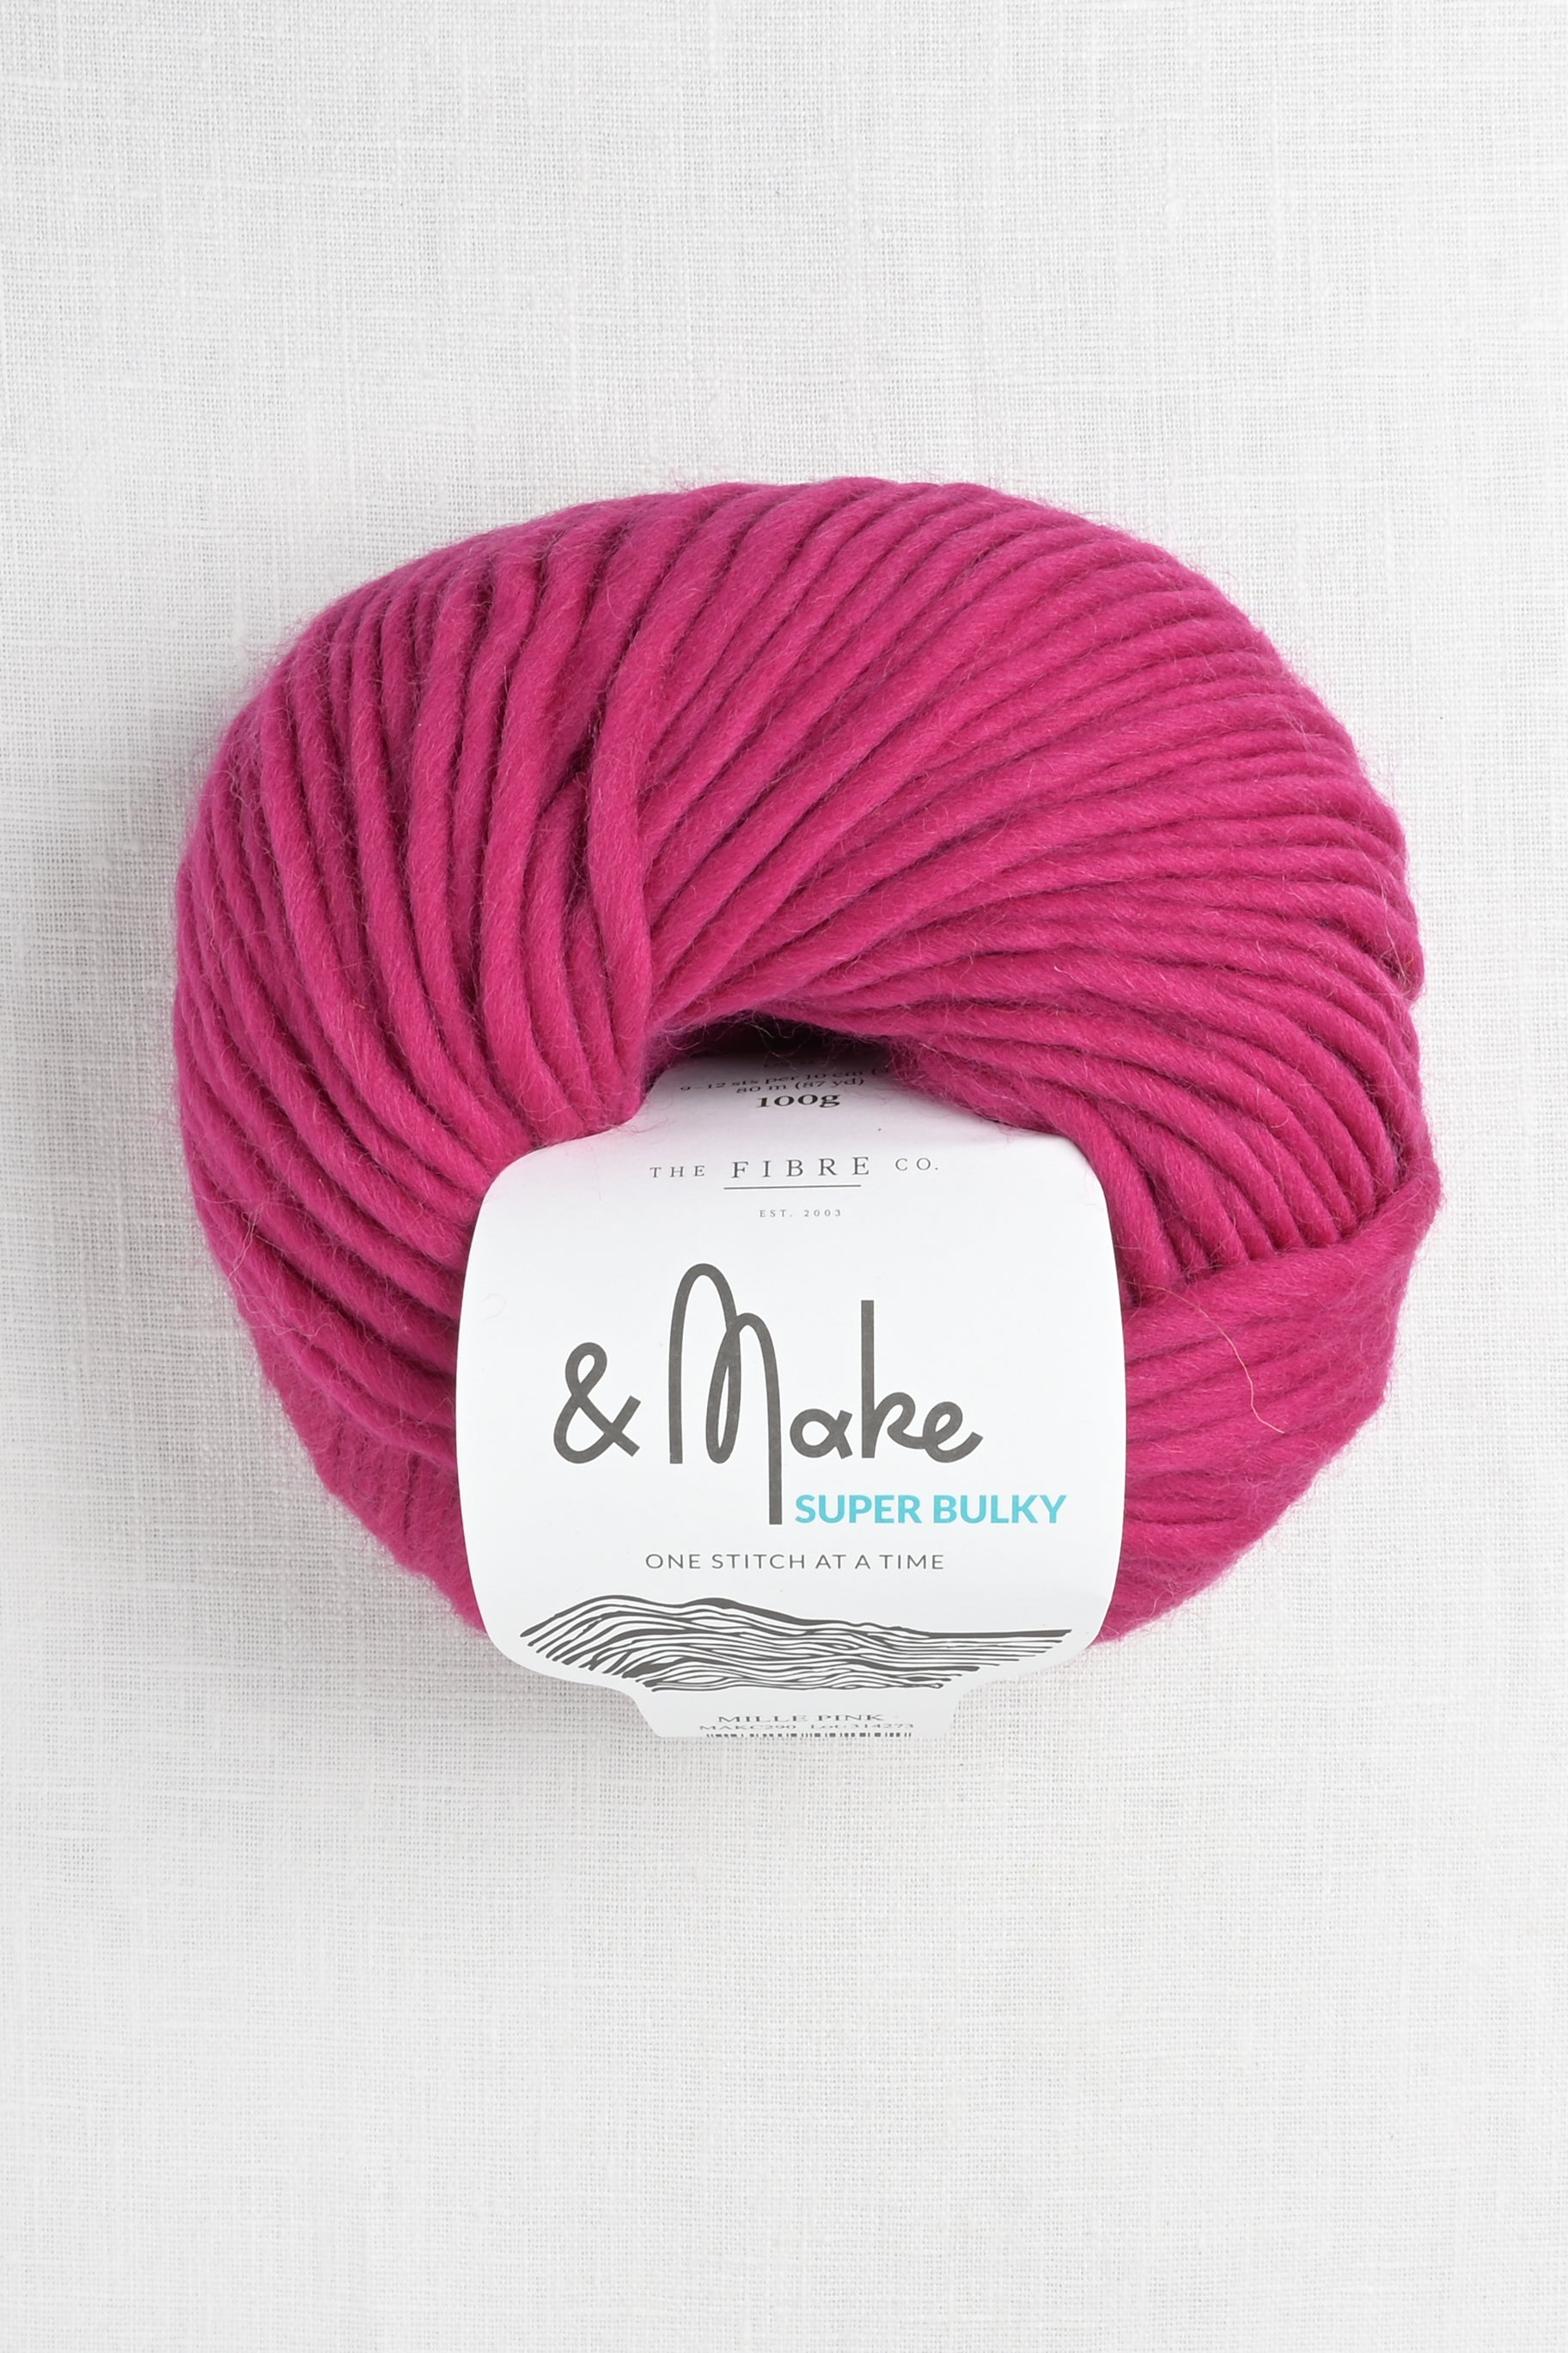 Heal the Wool Yarn - Super Bulky – Sweet Pea Fiber